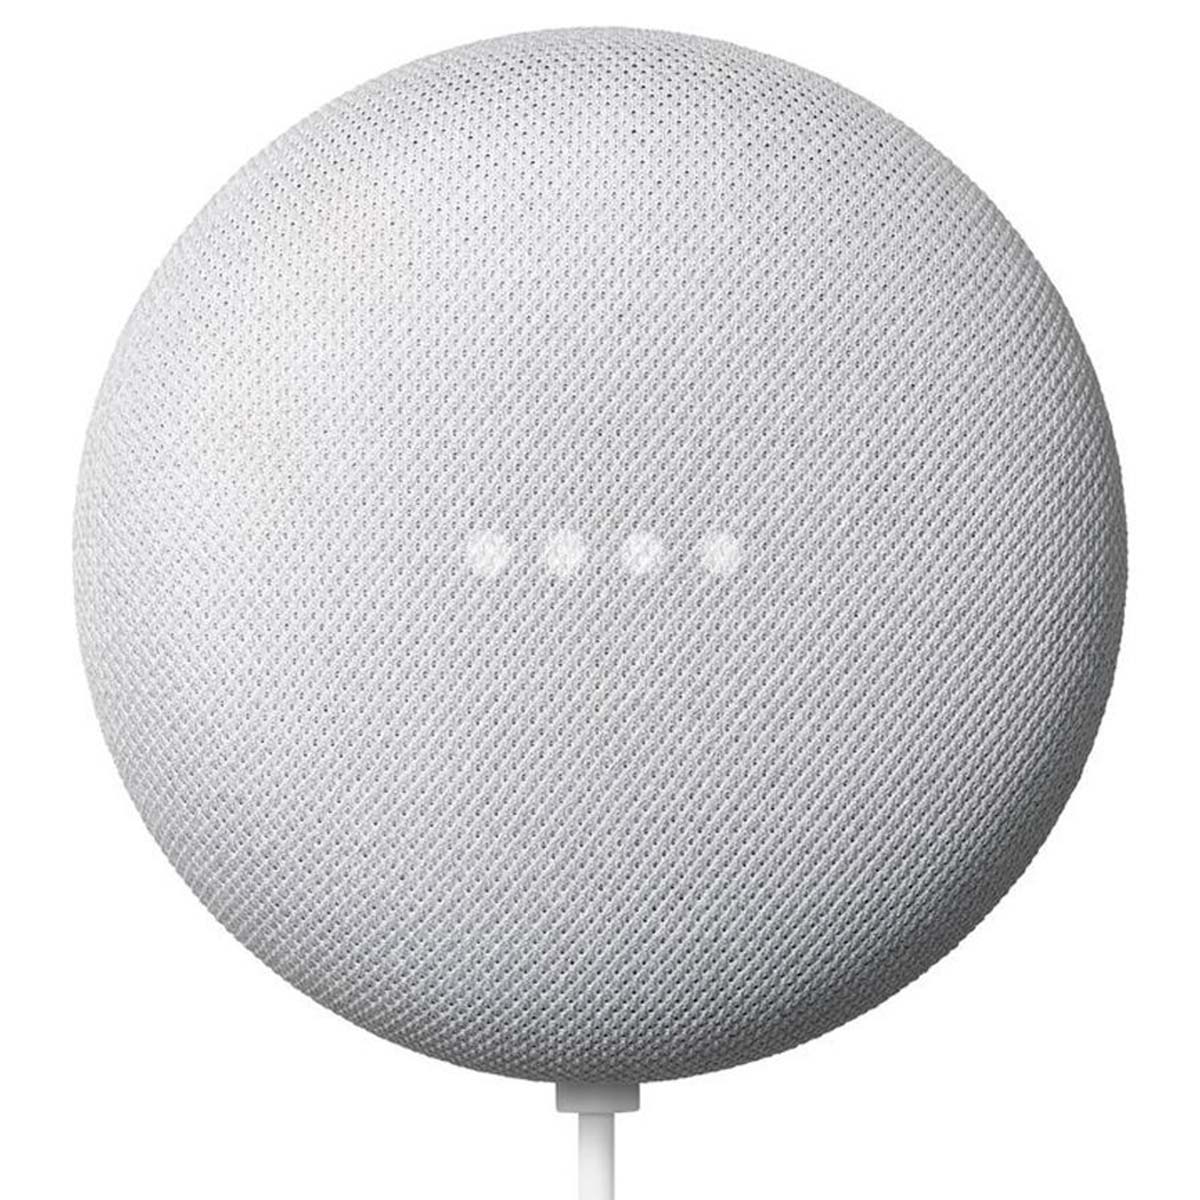 Assistente Google Home Nest Mini 2ª Geração - Smart Speaker com Google Assistente - Bluetooth 5.0 - Giz - GA00638-BR